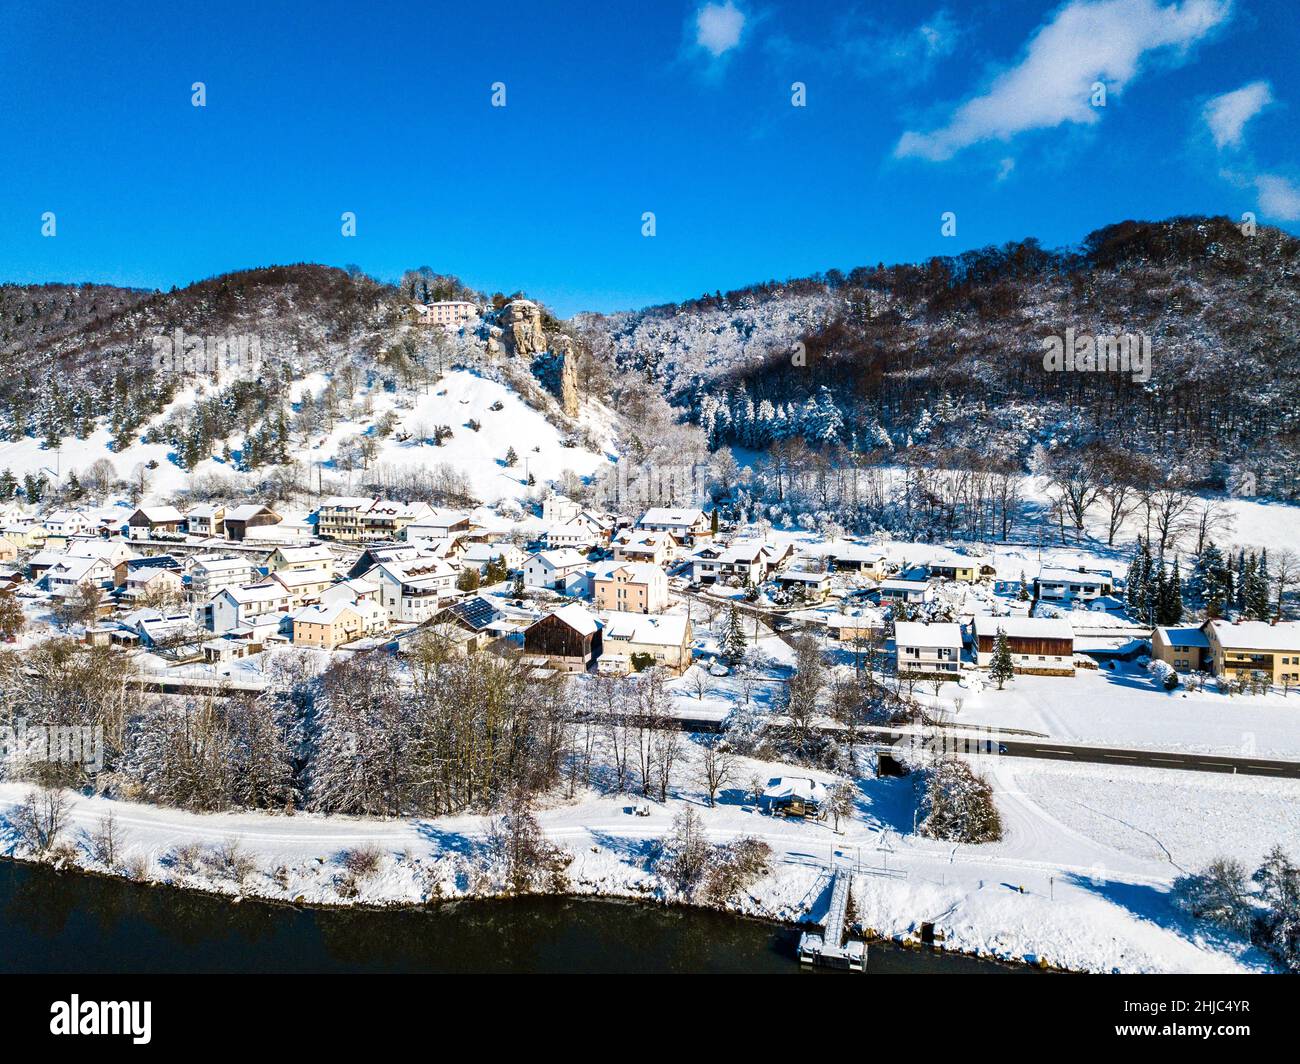 vista aérea de meihern, un pequeño pueblo en el parque natural de altmühltal, baviera, alemania en un día soleado en invierno Foto de stock